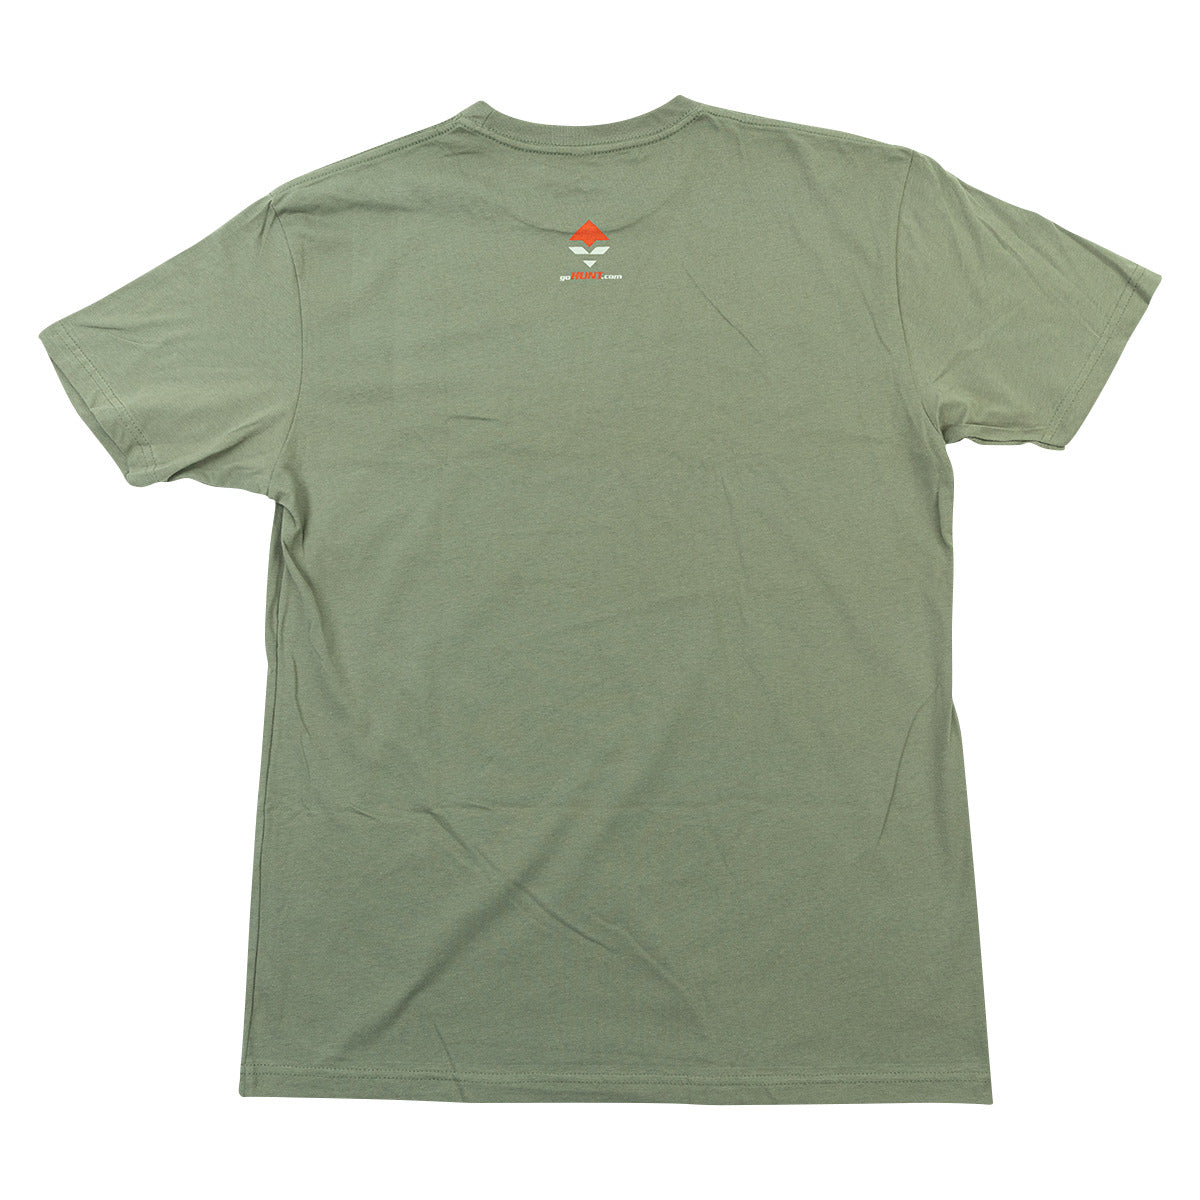 GOHUNT Buck Antler T-Shirt in goHUNT Buck Antler T-Shirt by goHUNT | Apparel - goHUNT Shop by GOHUNT | GOHUNT - GOHUNT Shop